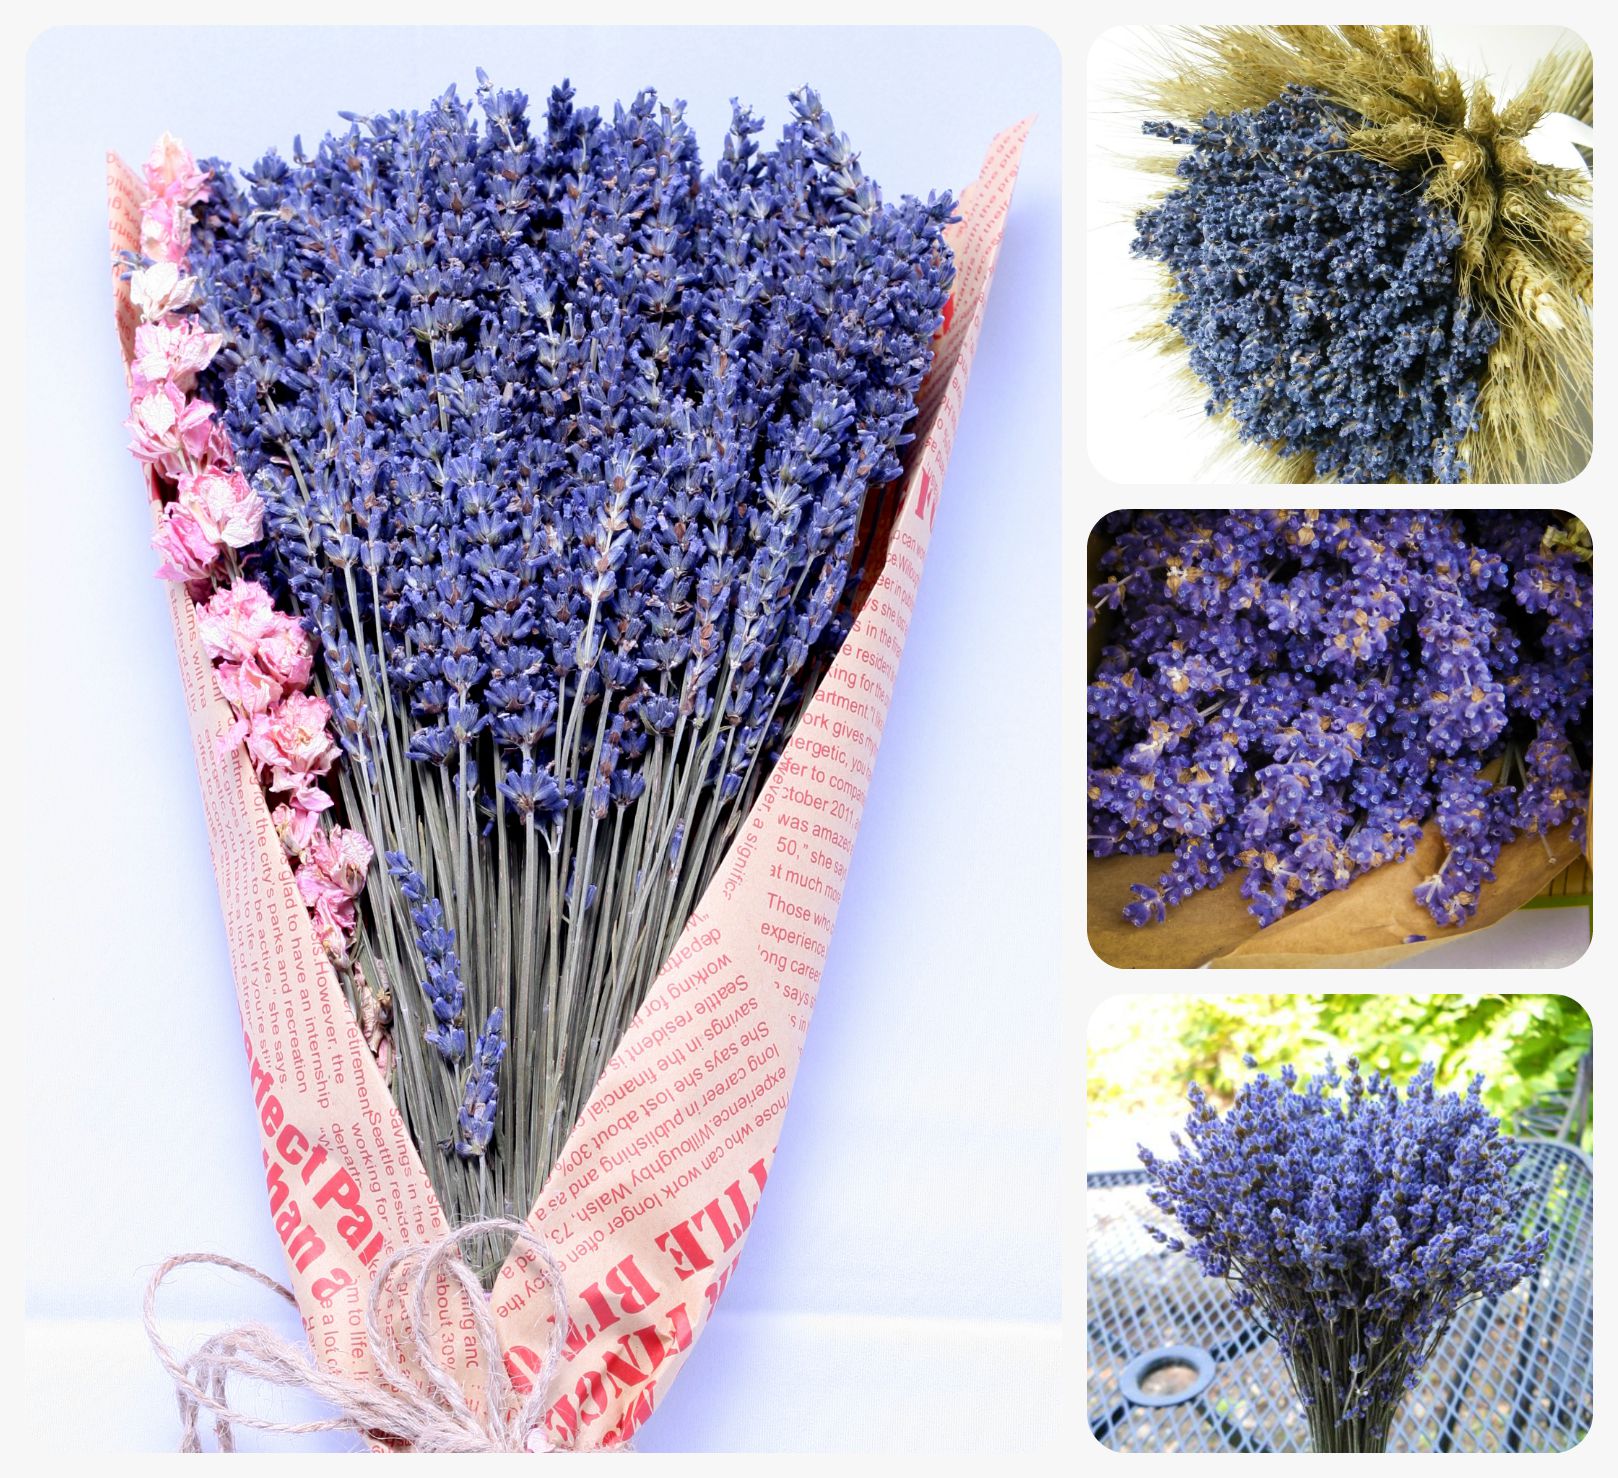 Đi tìm nơi bán sỉ hoa Lavender Pháp đáng tin cậy ở TP.HCM